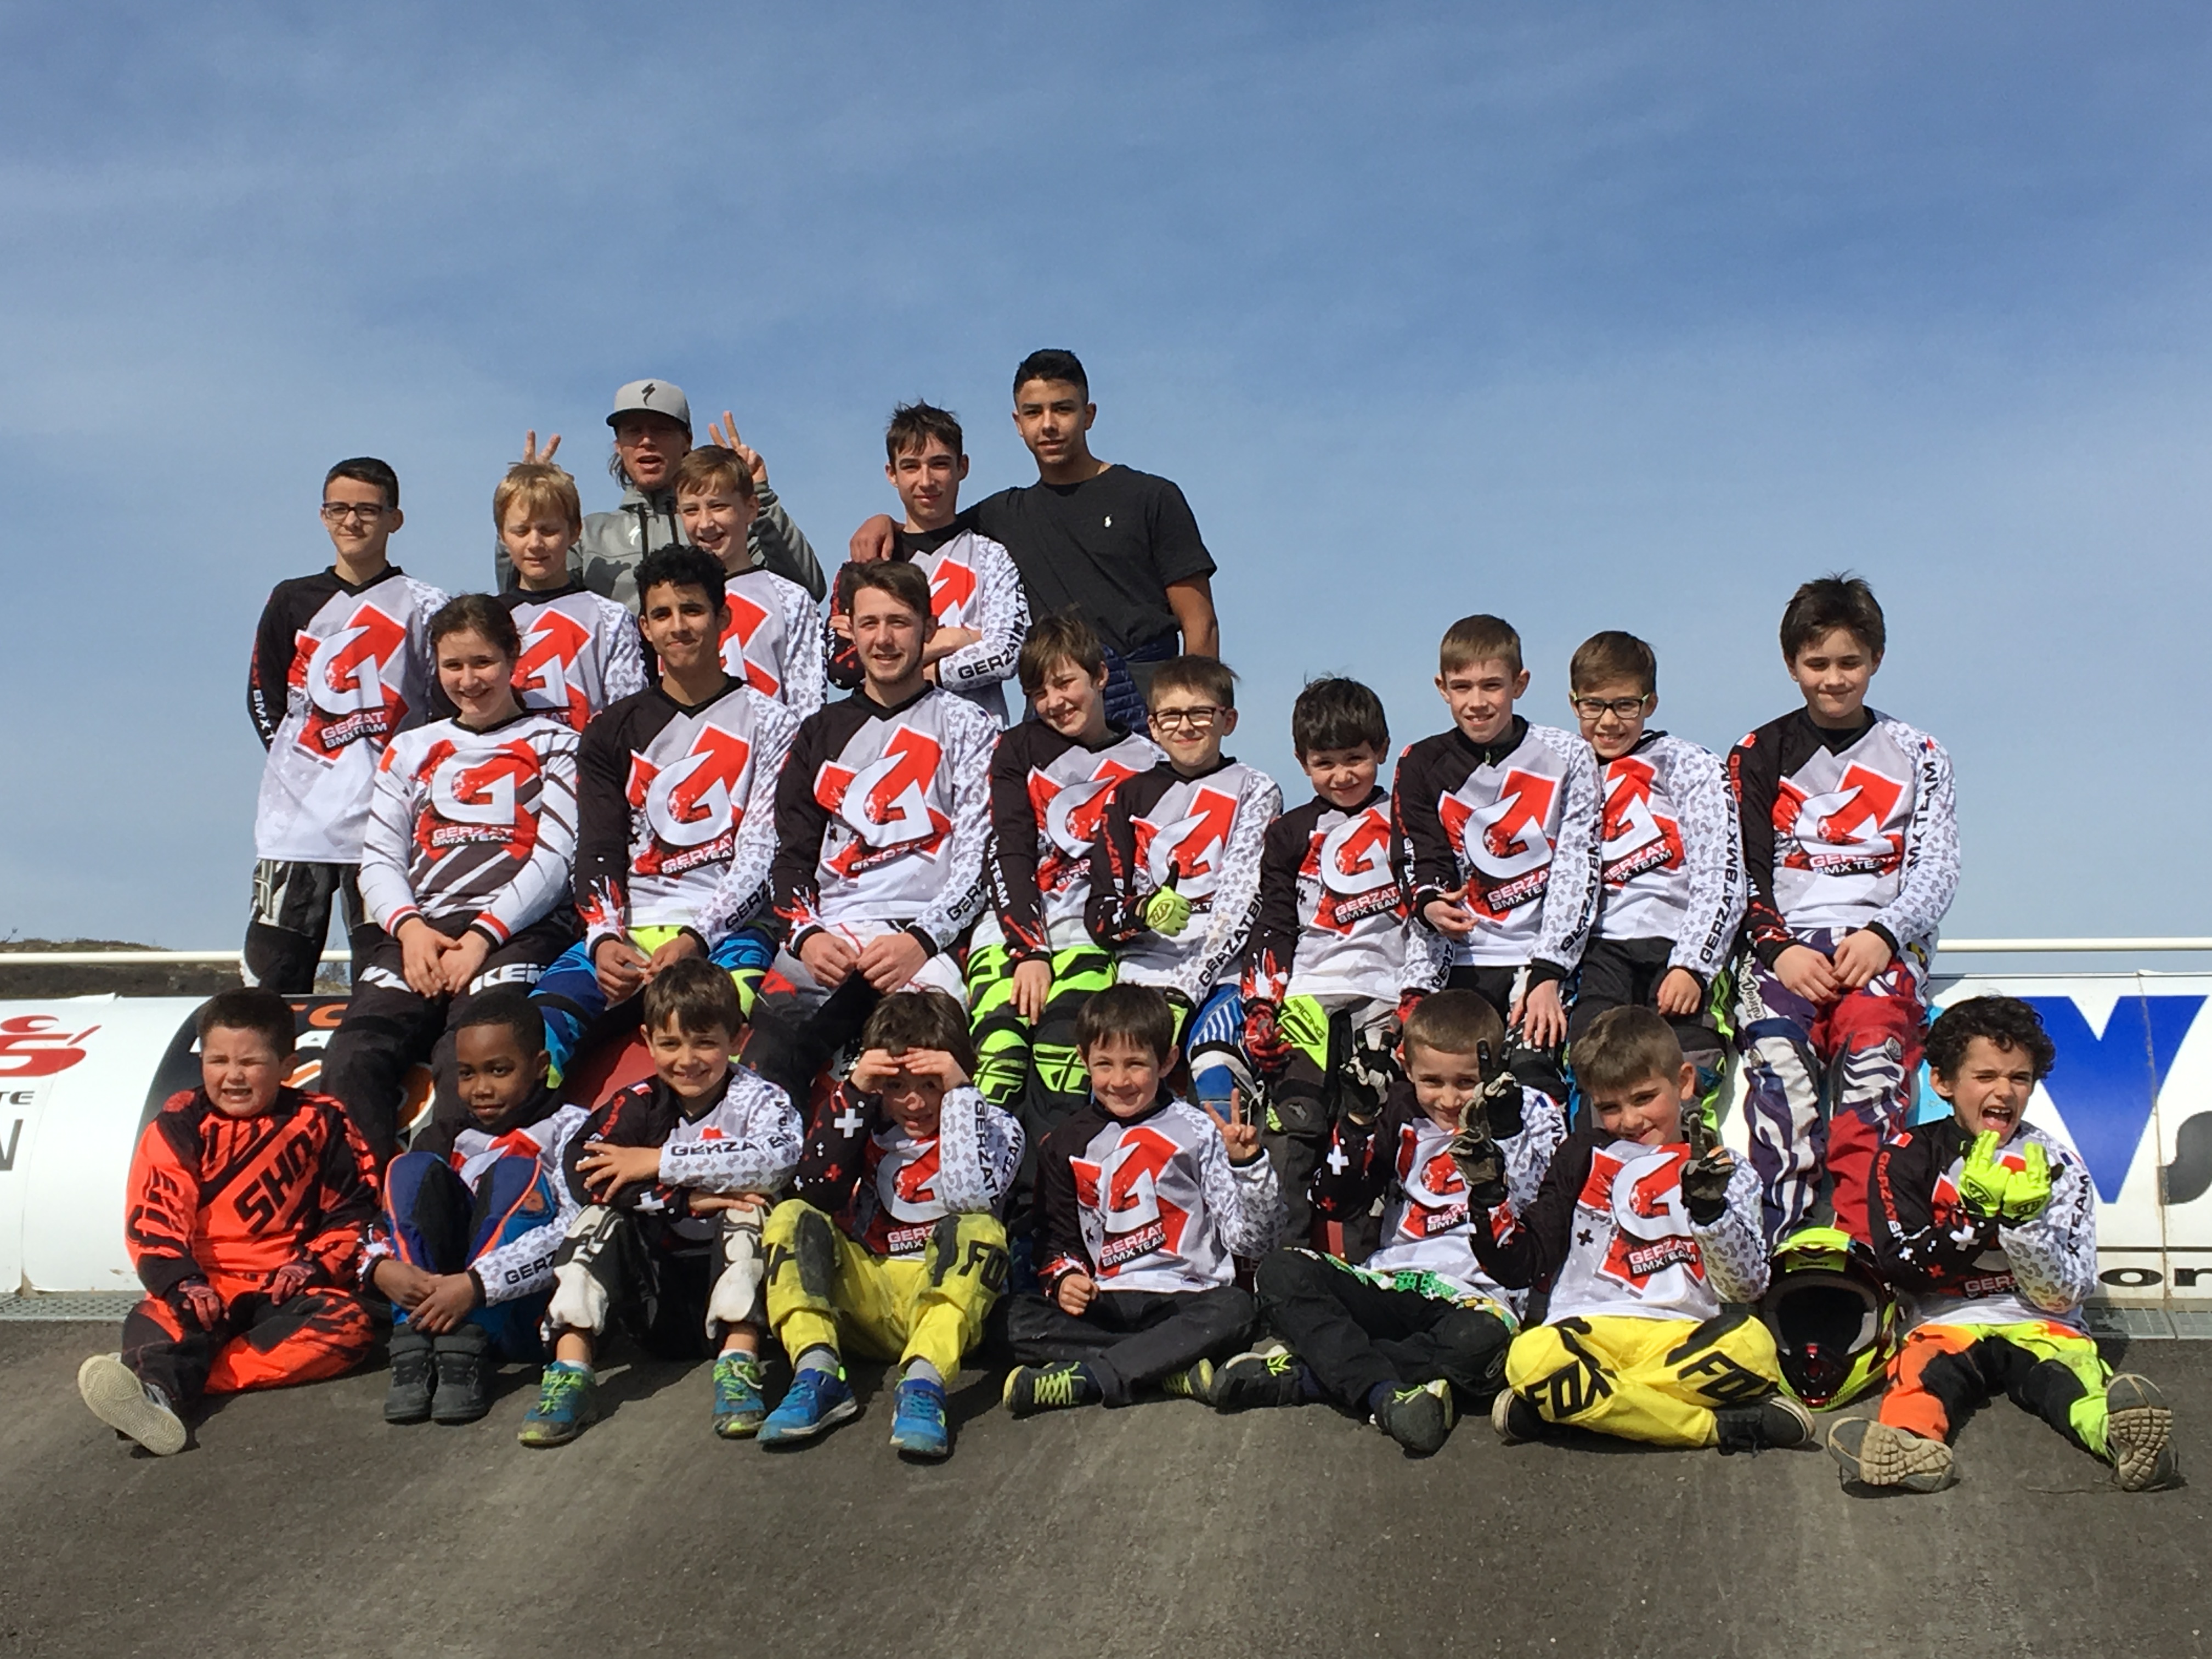 Un beau début de saison en Coupe d’Auvergne pour le Gerzat BMX TEAM !